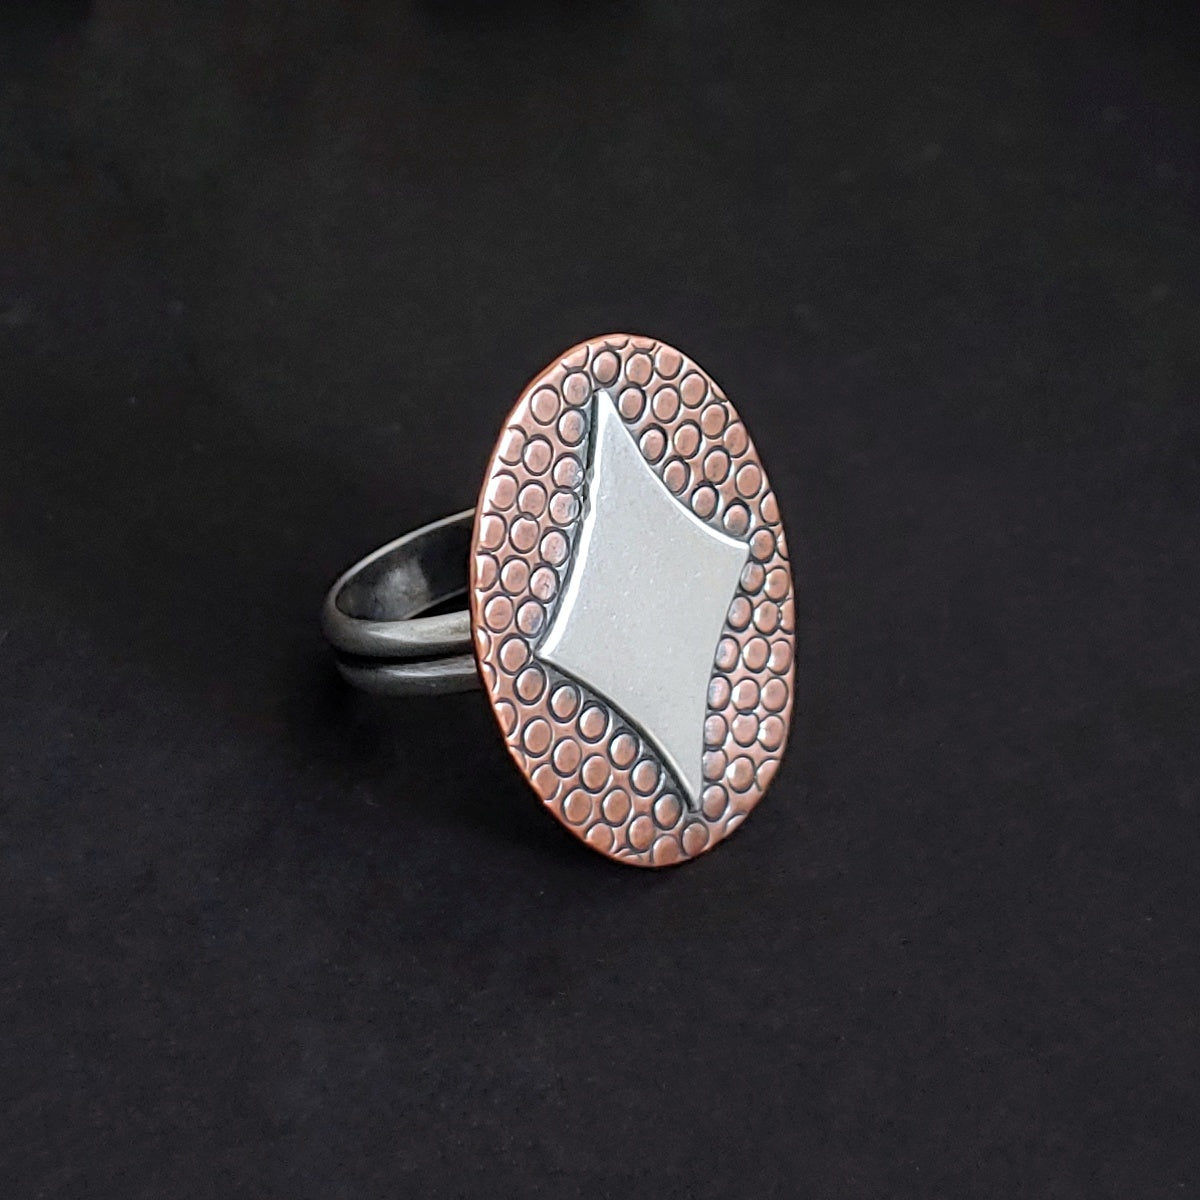 Retro Diamond in Silver on Copper Ring